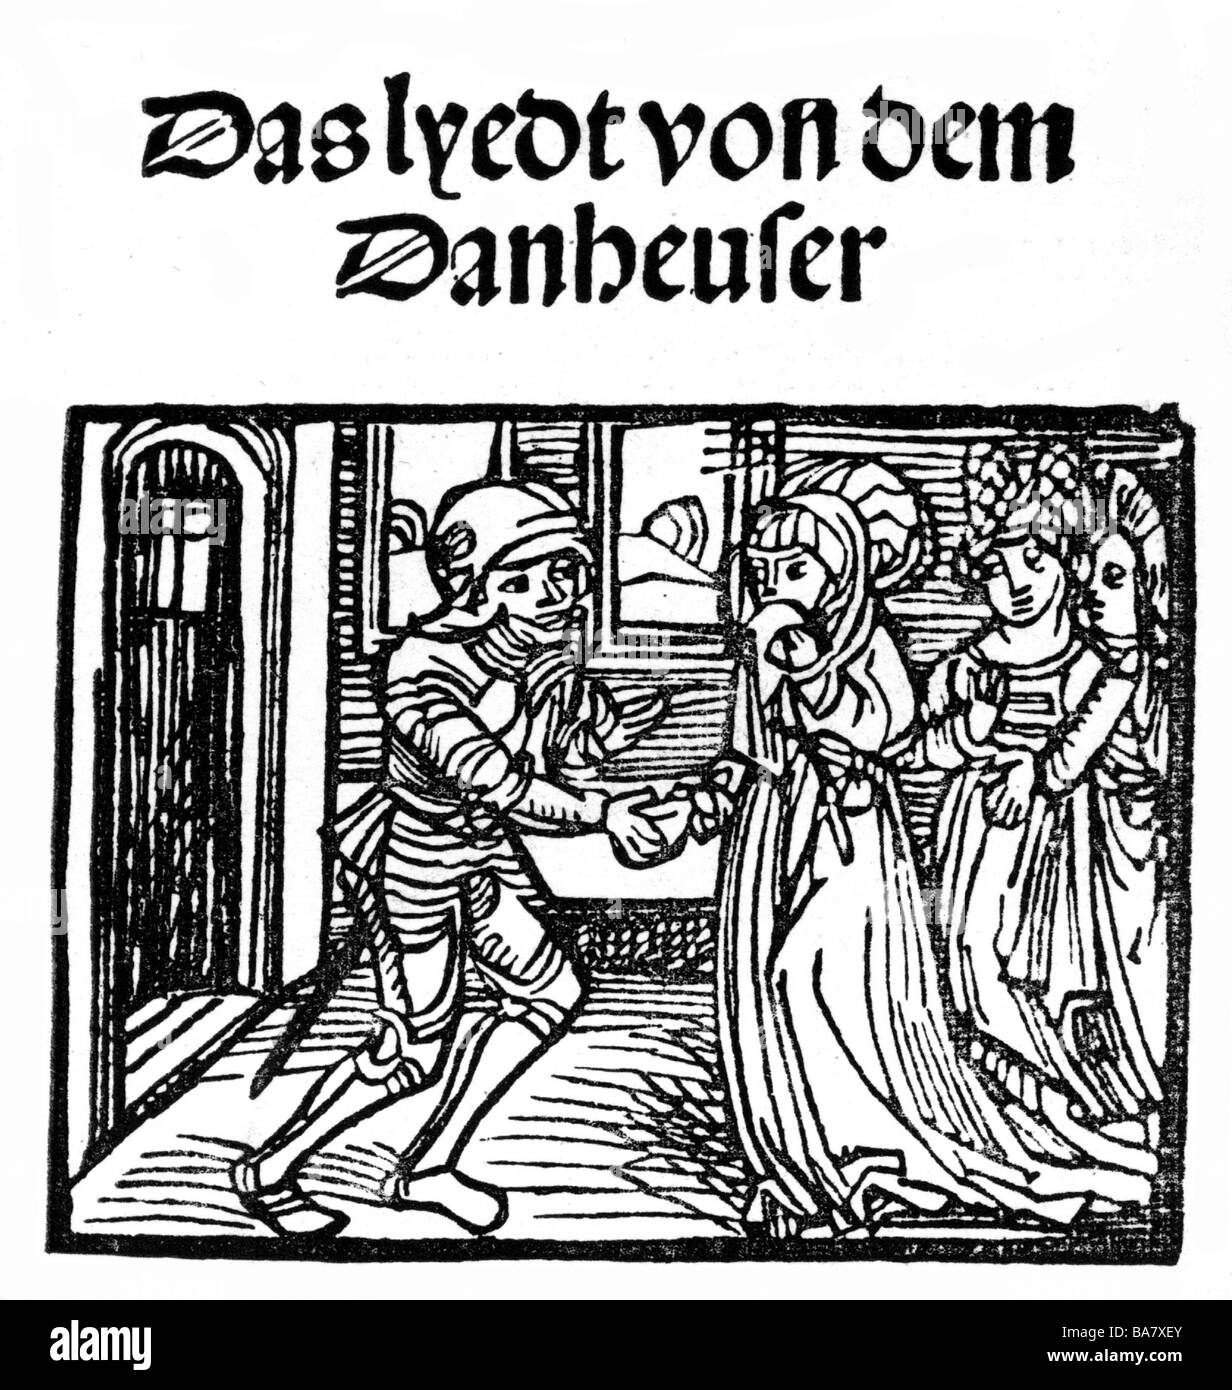 Tannhaeuser, + ca. 1270, deutscher Minnesänger, volle Länge, "das Lied der Tannhaeuser", gedruckt von Jobst Gutknecht, Nürnberg, Deutschland, 1515, Titel, Holzschnitt, Stockfoto